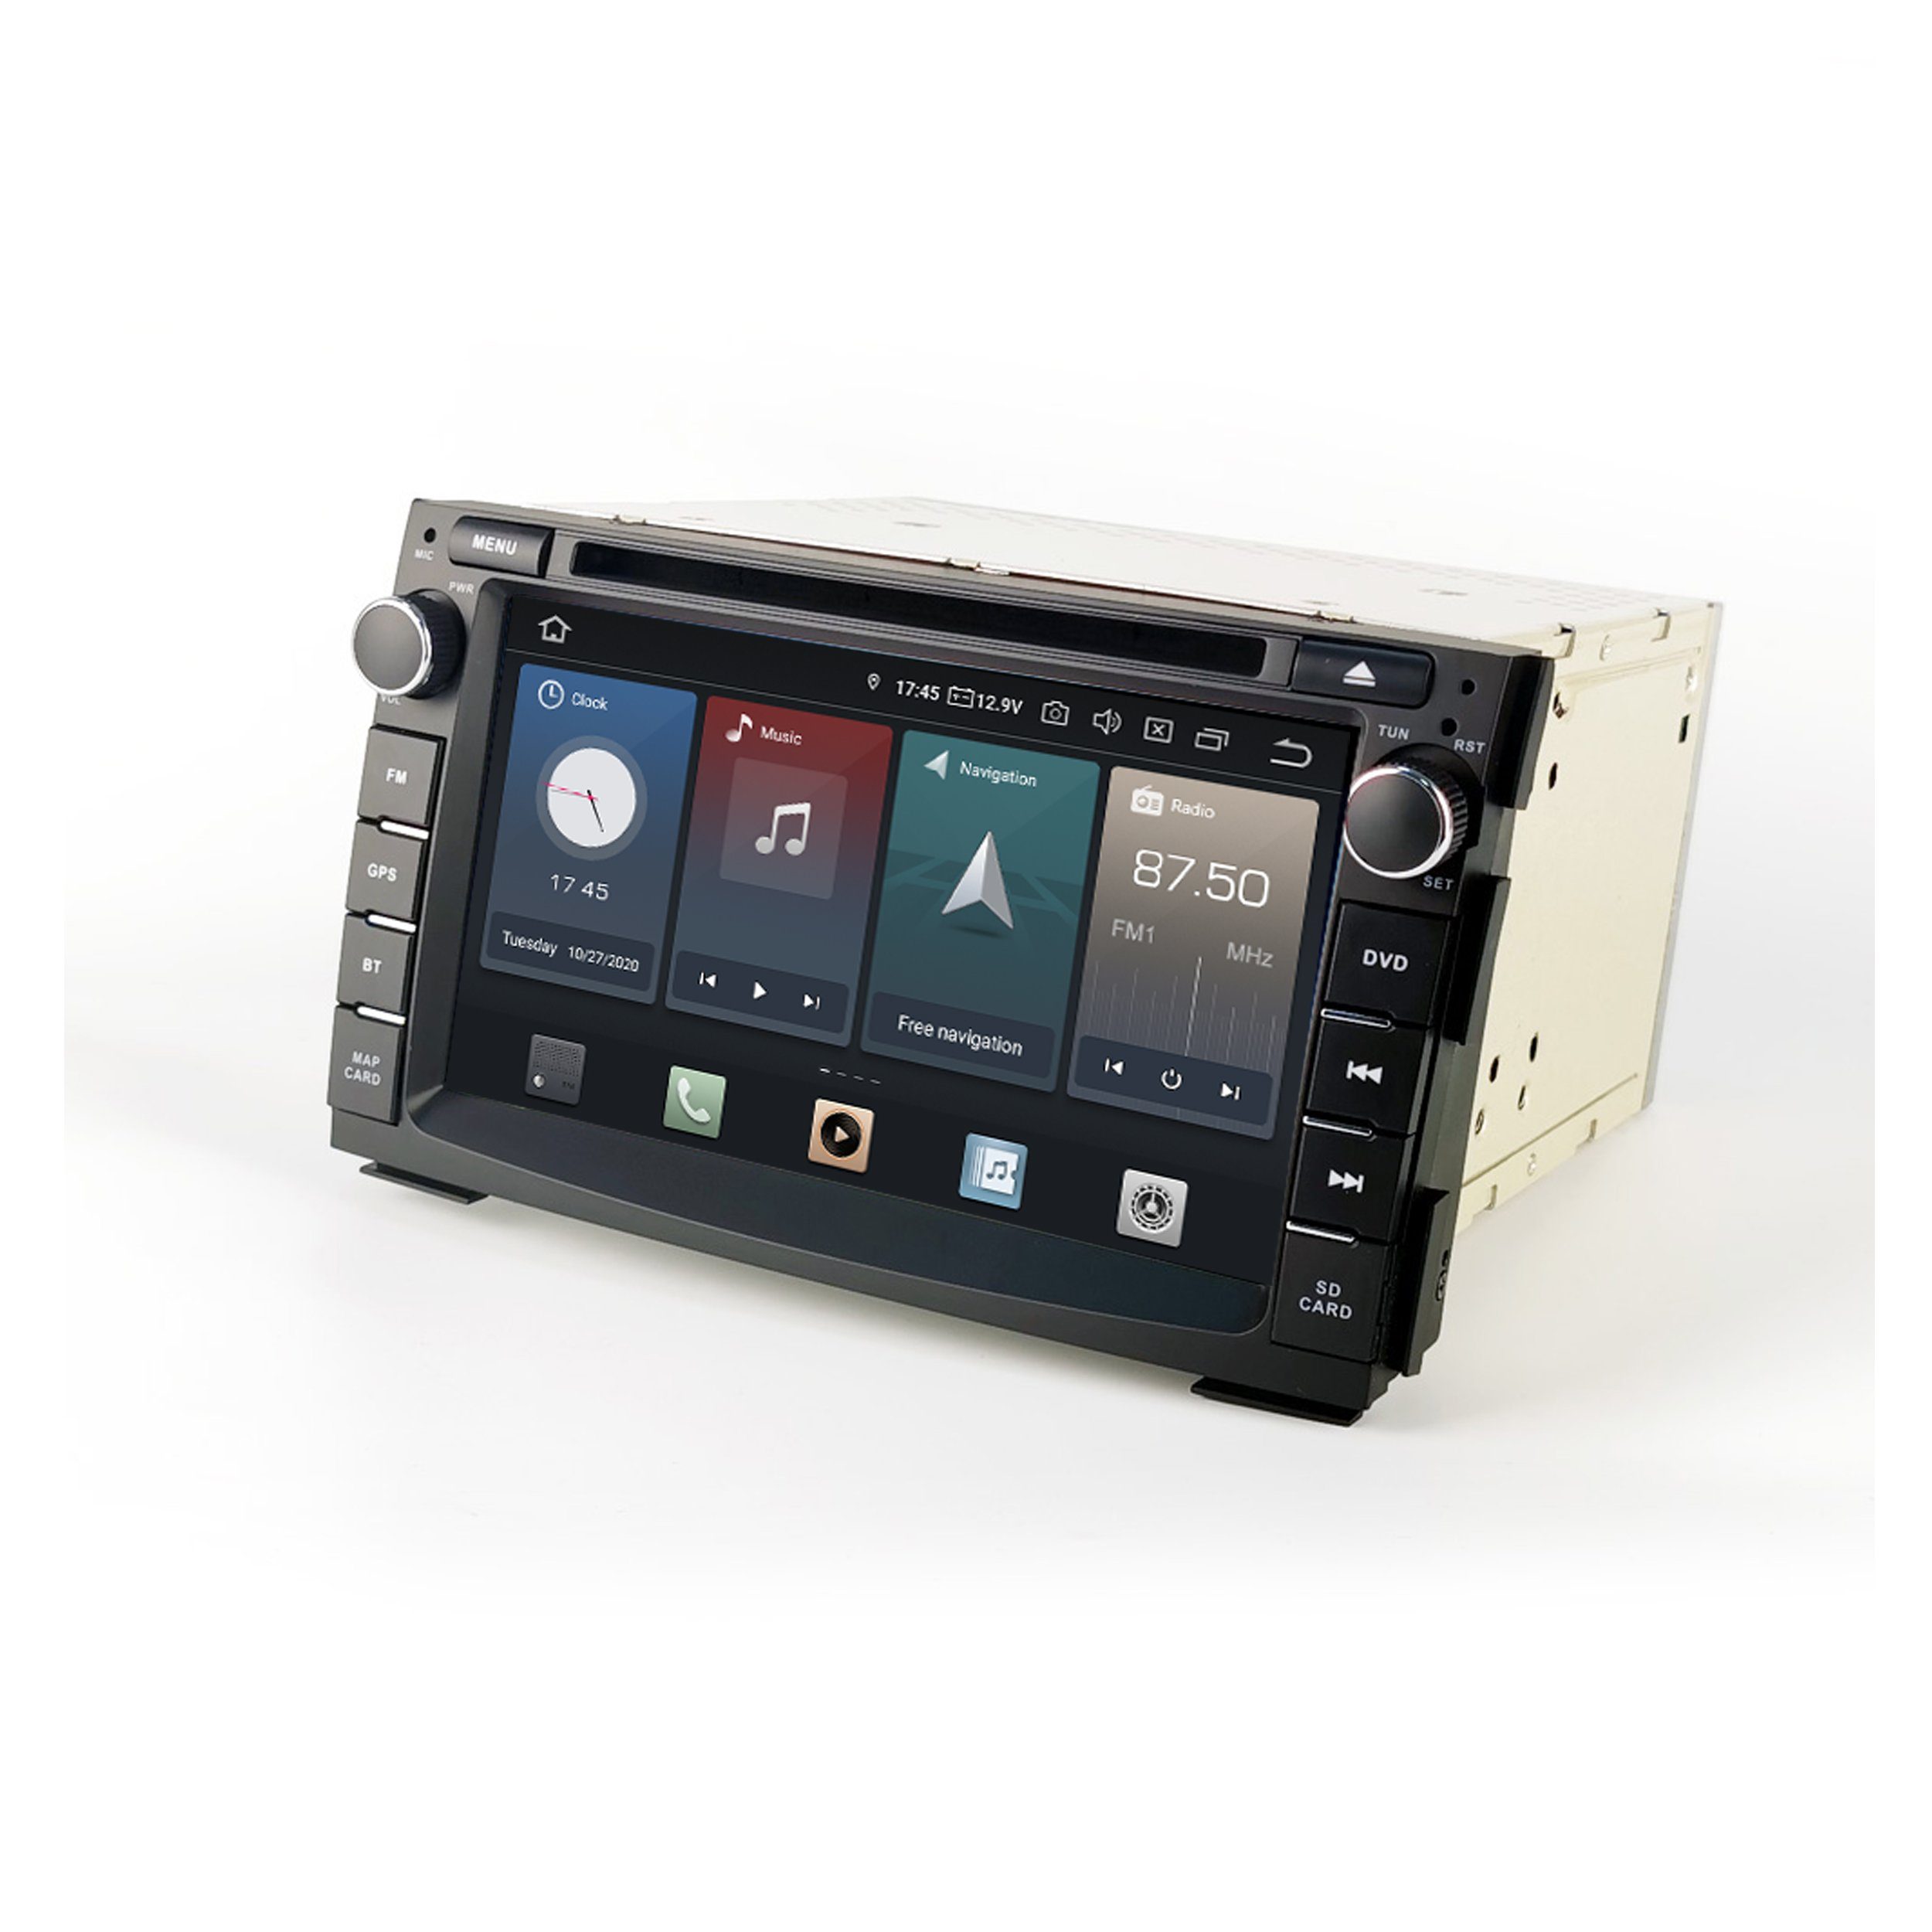 TAFFIO Für Kia Cee'd AndroidAuto 7" DVD Radio GPS CarPlay Touch Android Einbau-Navigationsgerät Venga